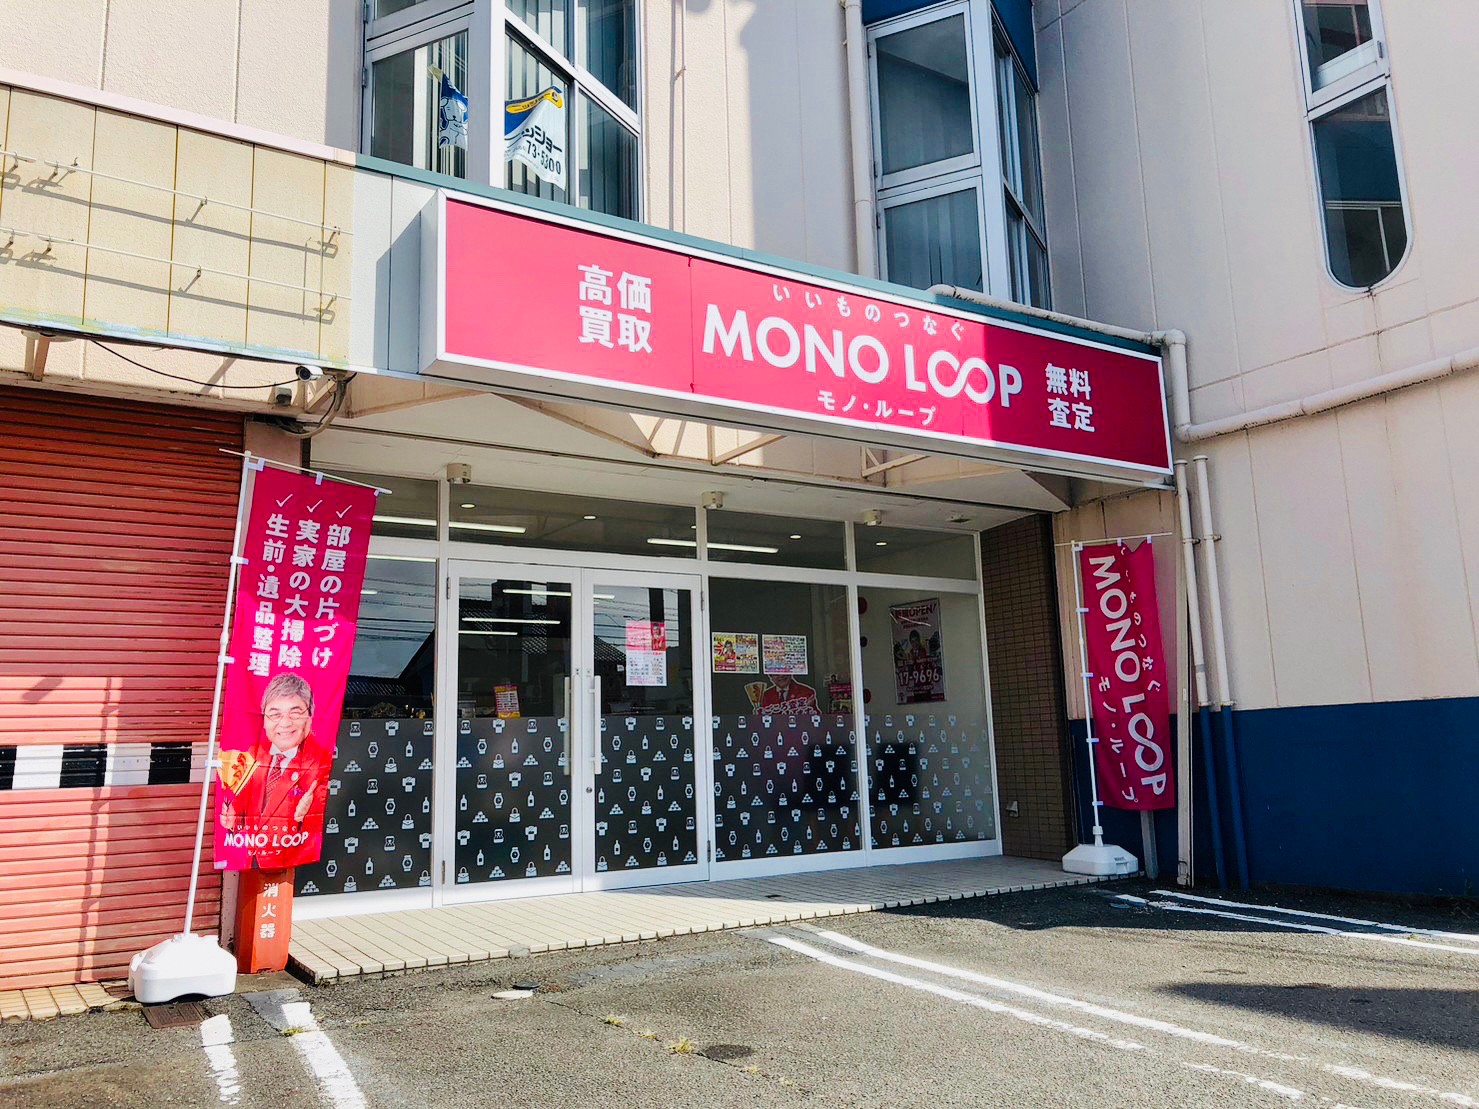 モノ・ループ 大垣店